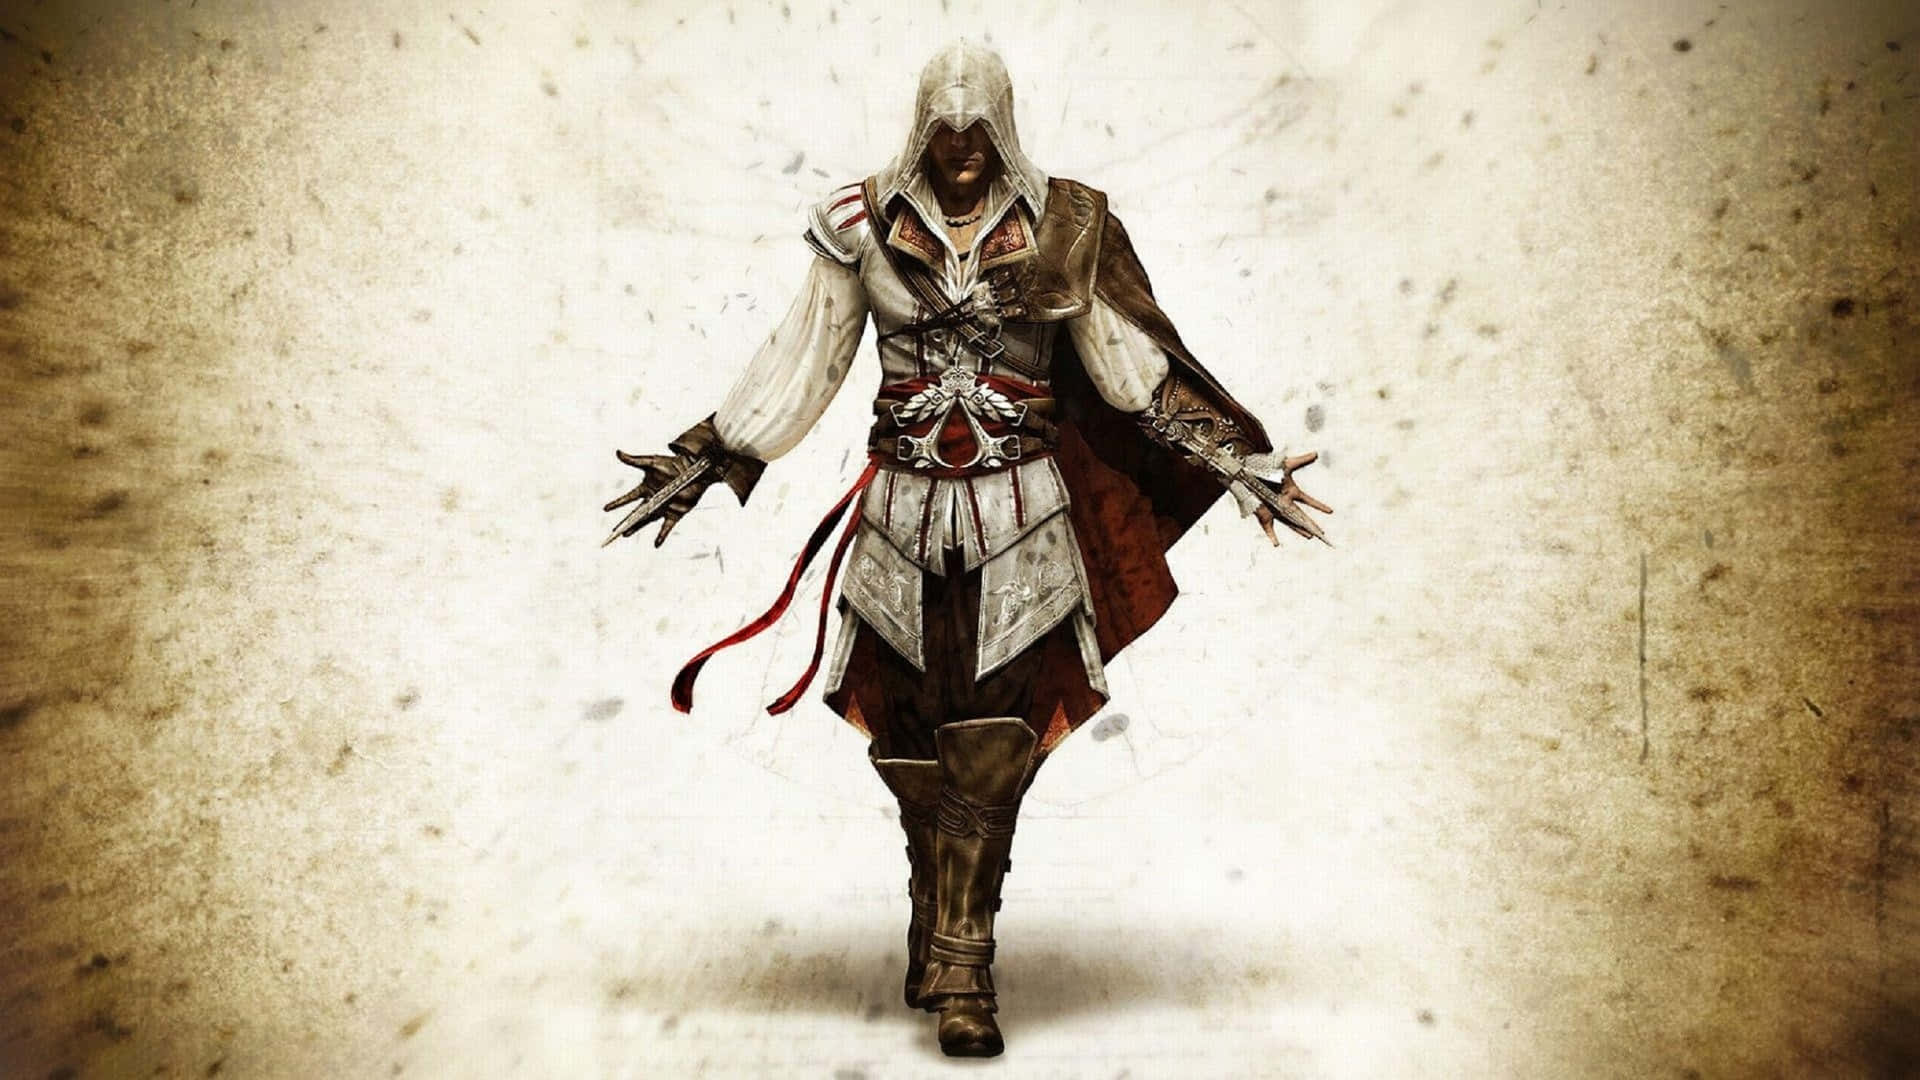 Fondosde Pantalla Hd De Assassin's Creed Iii